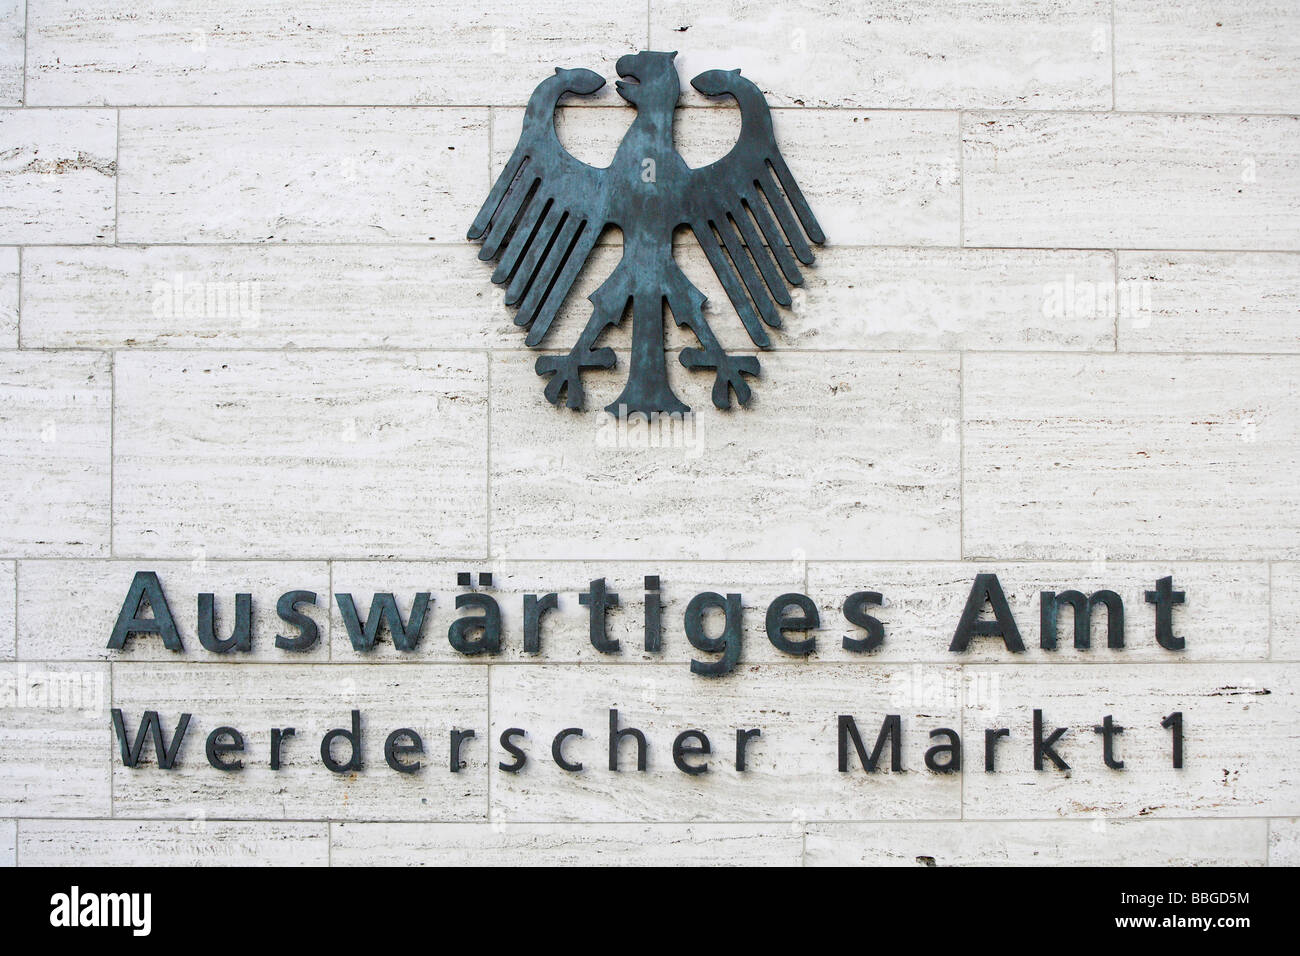 Auswaertiges Amt, Foreign Office, Werderscher Markt 1, Berlín, Alemania, Europa Foto de stock